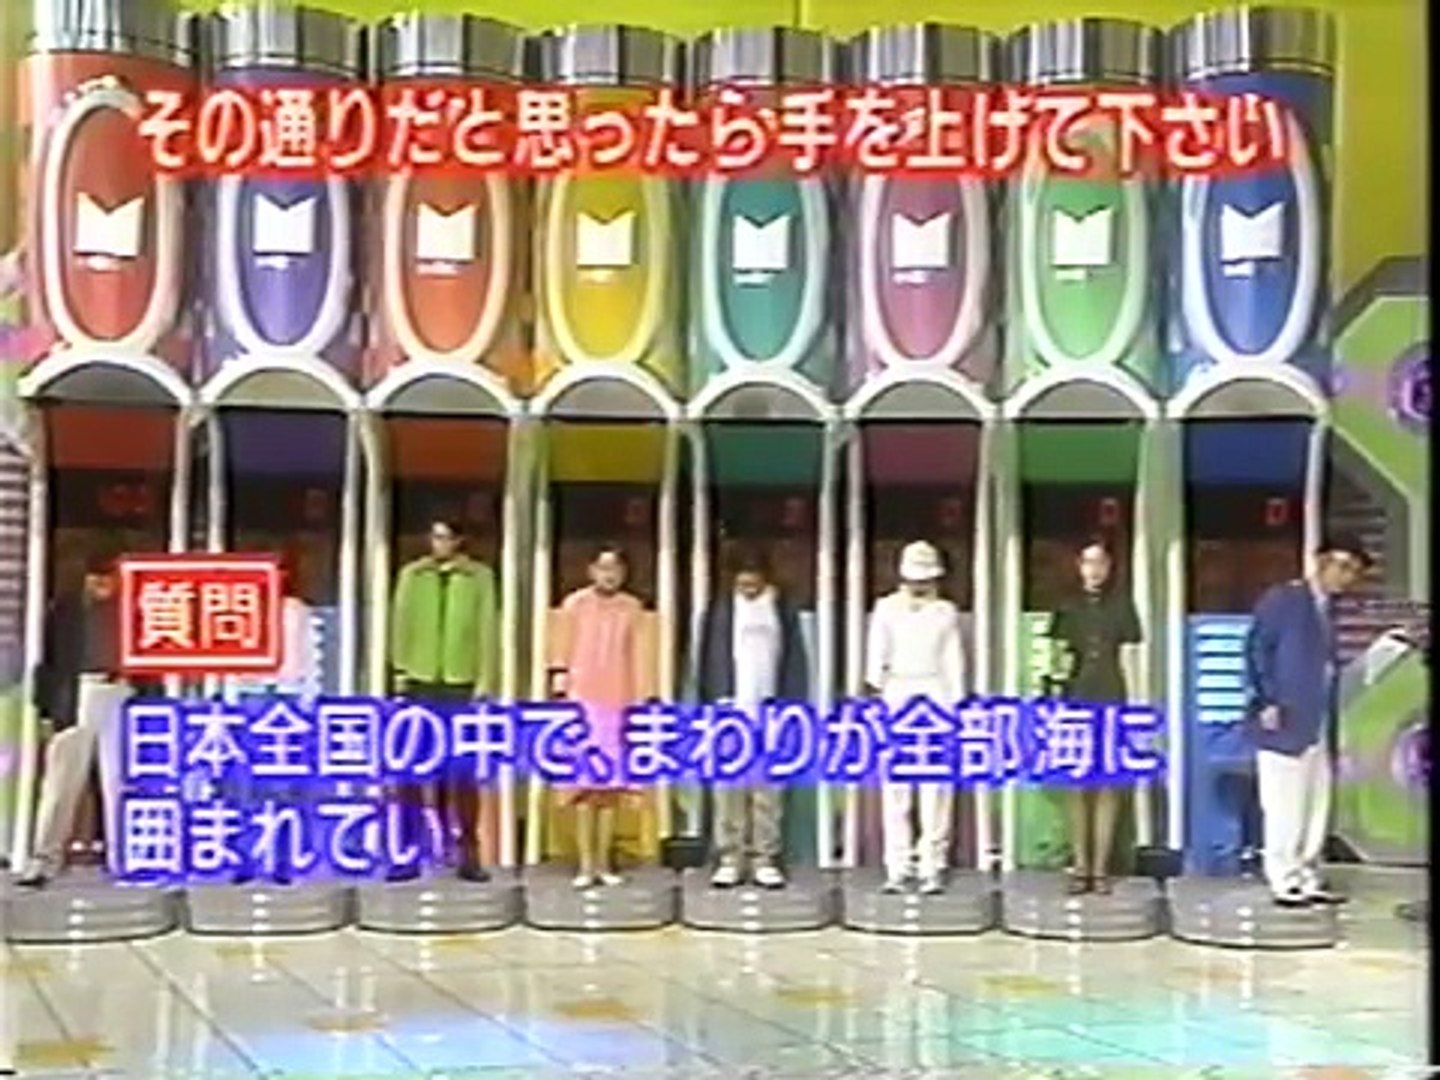 マジカル頭脳パワー 1996年2月29日放送 Video Dailymotion